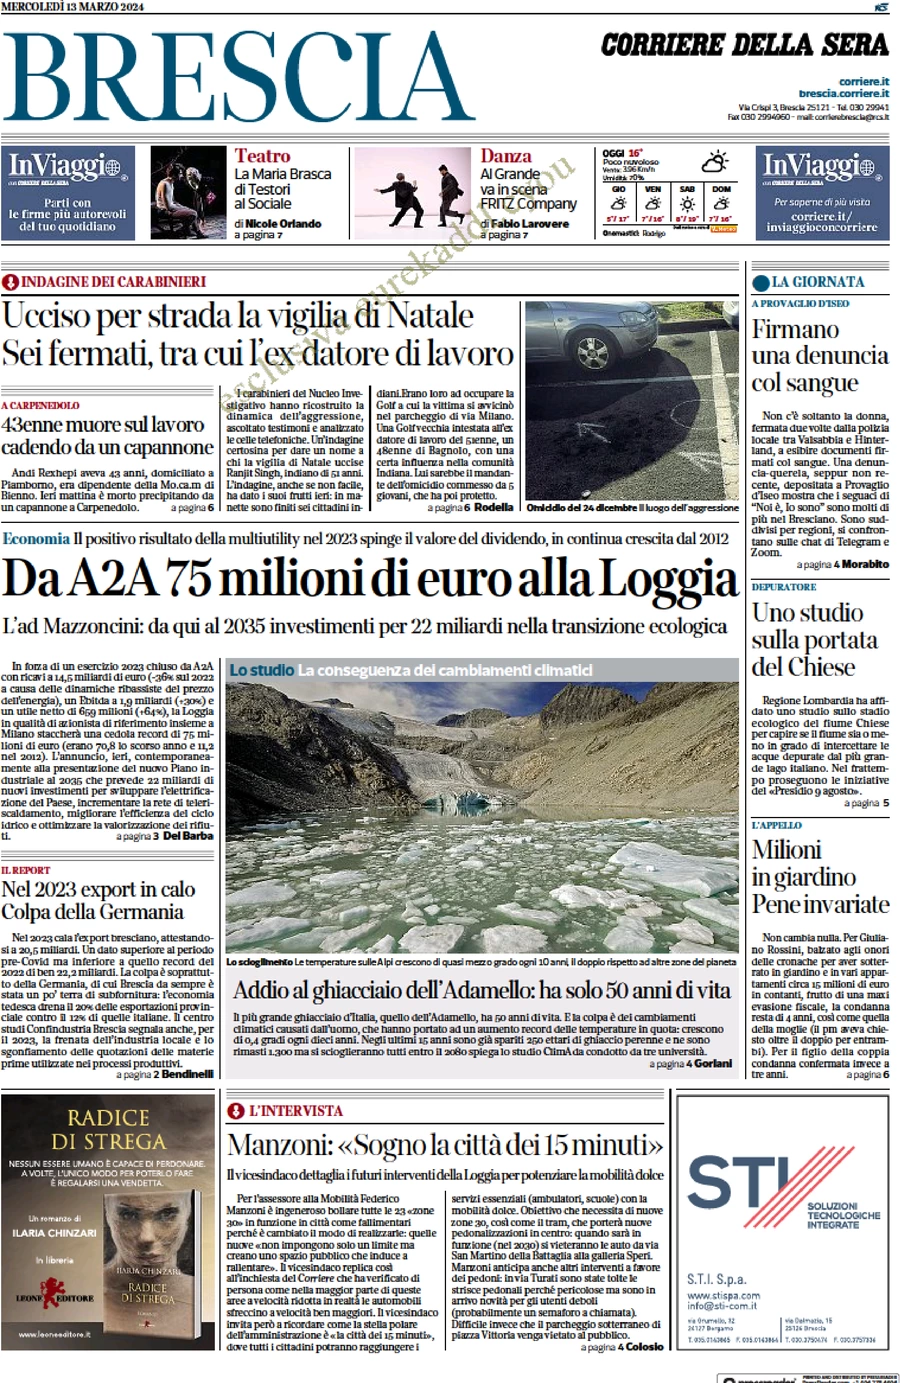 anteprima della prima pagina di corriere-della-sera-brescia del 13/03/2024